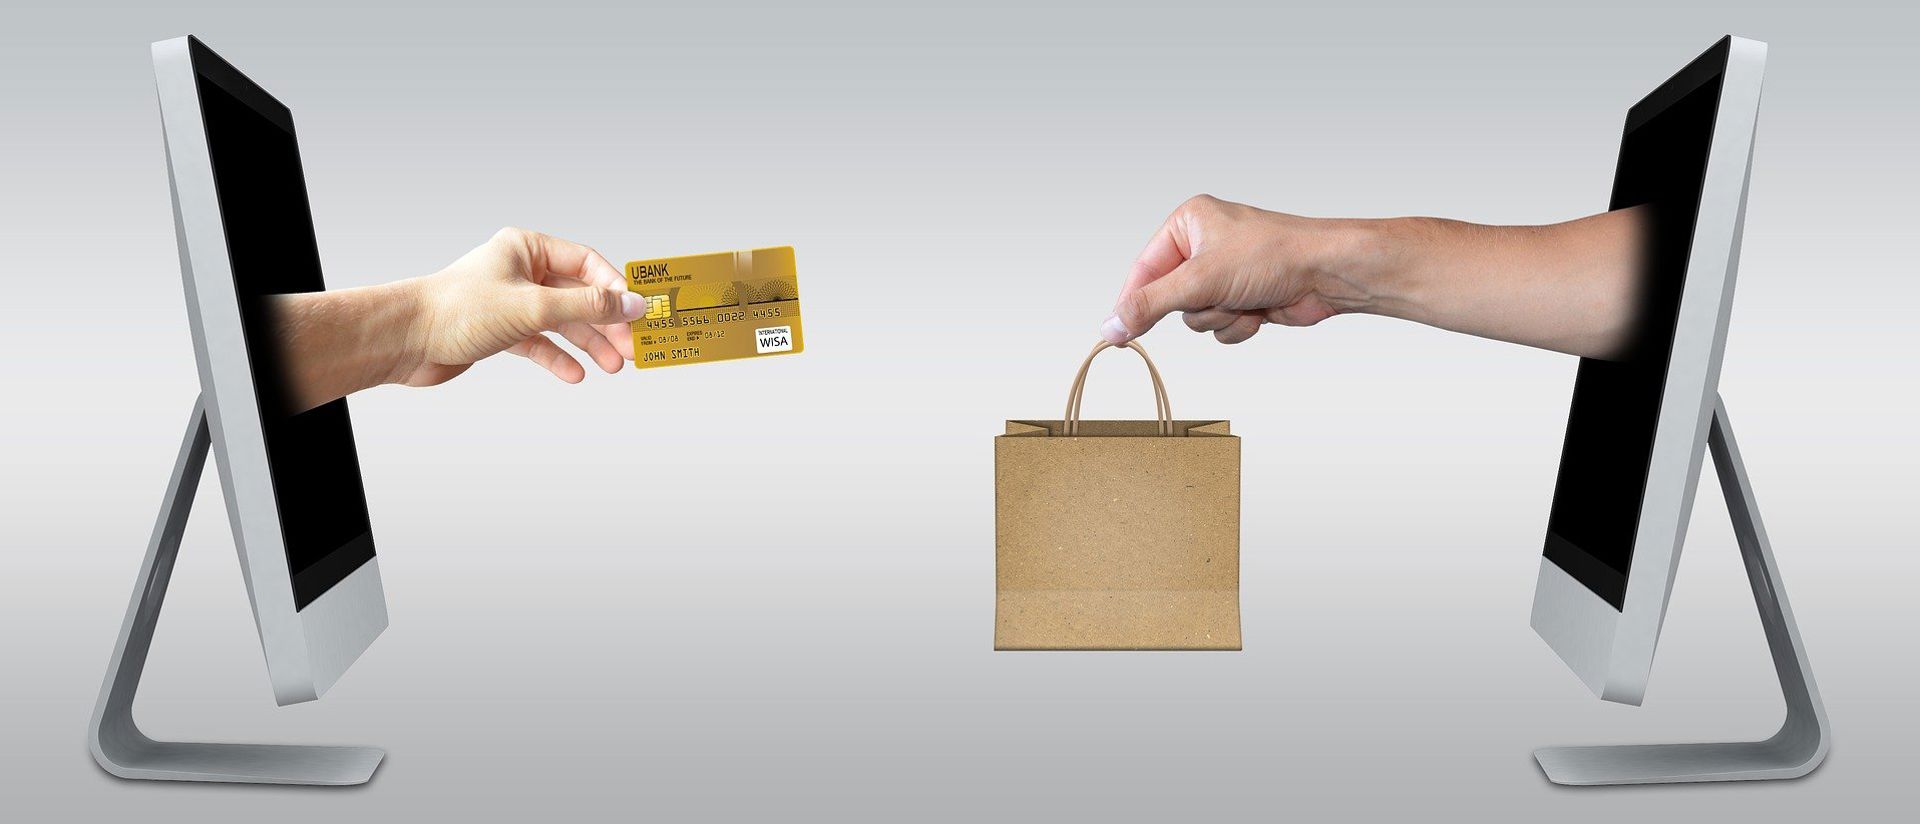 Luottokortti ja ostoskassi